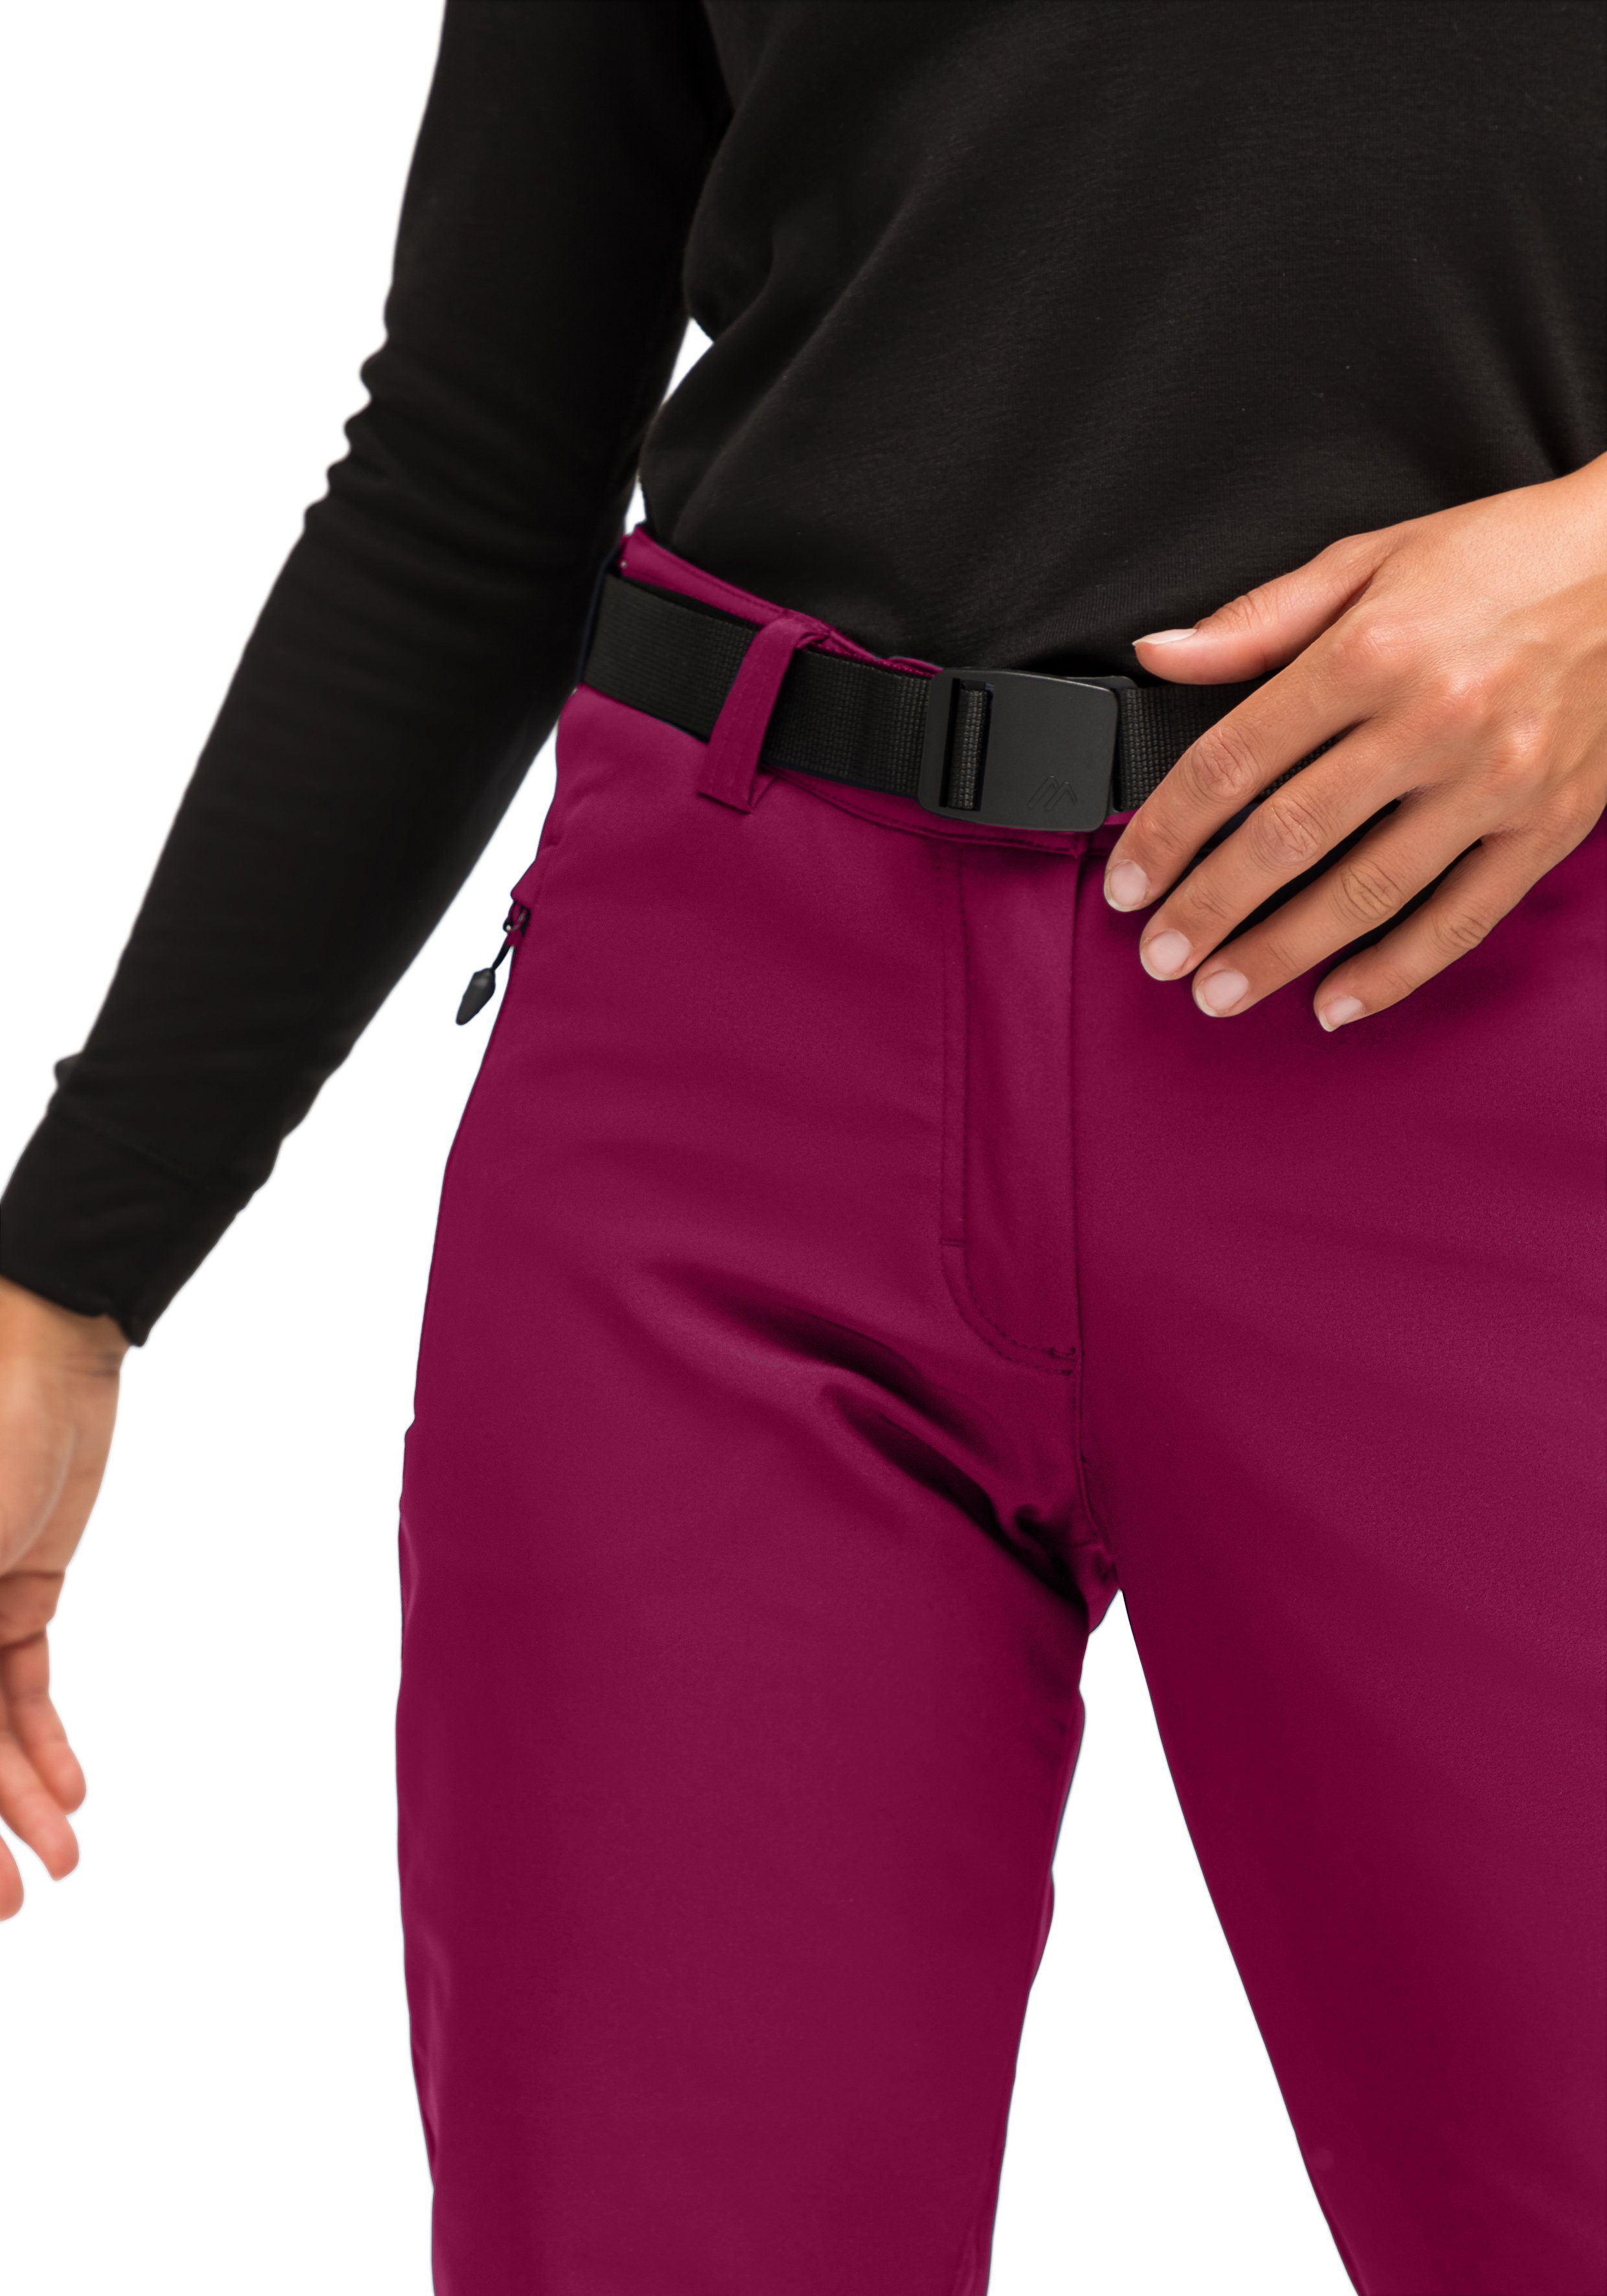 W und Tech elastisch winddicht Sports Warme Funktionshose magenta Pants Maier Softshellhose,